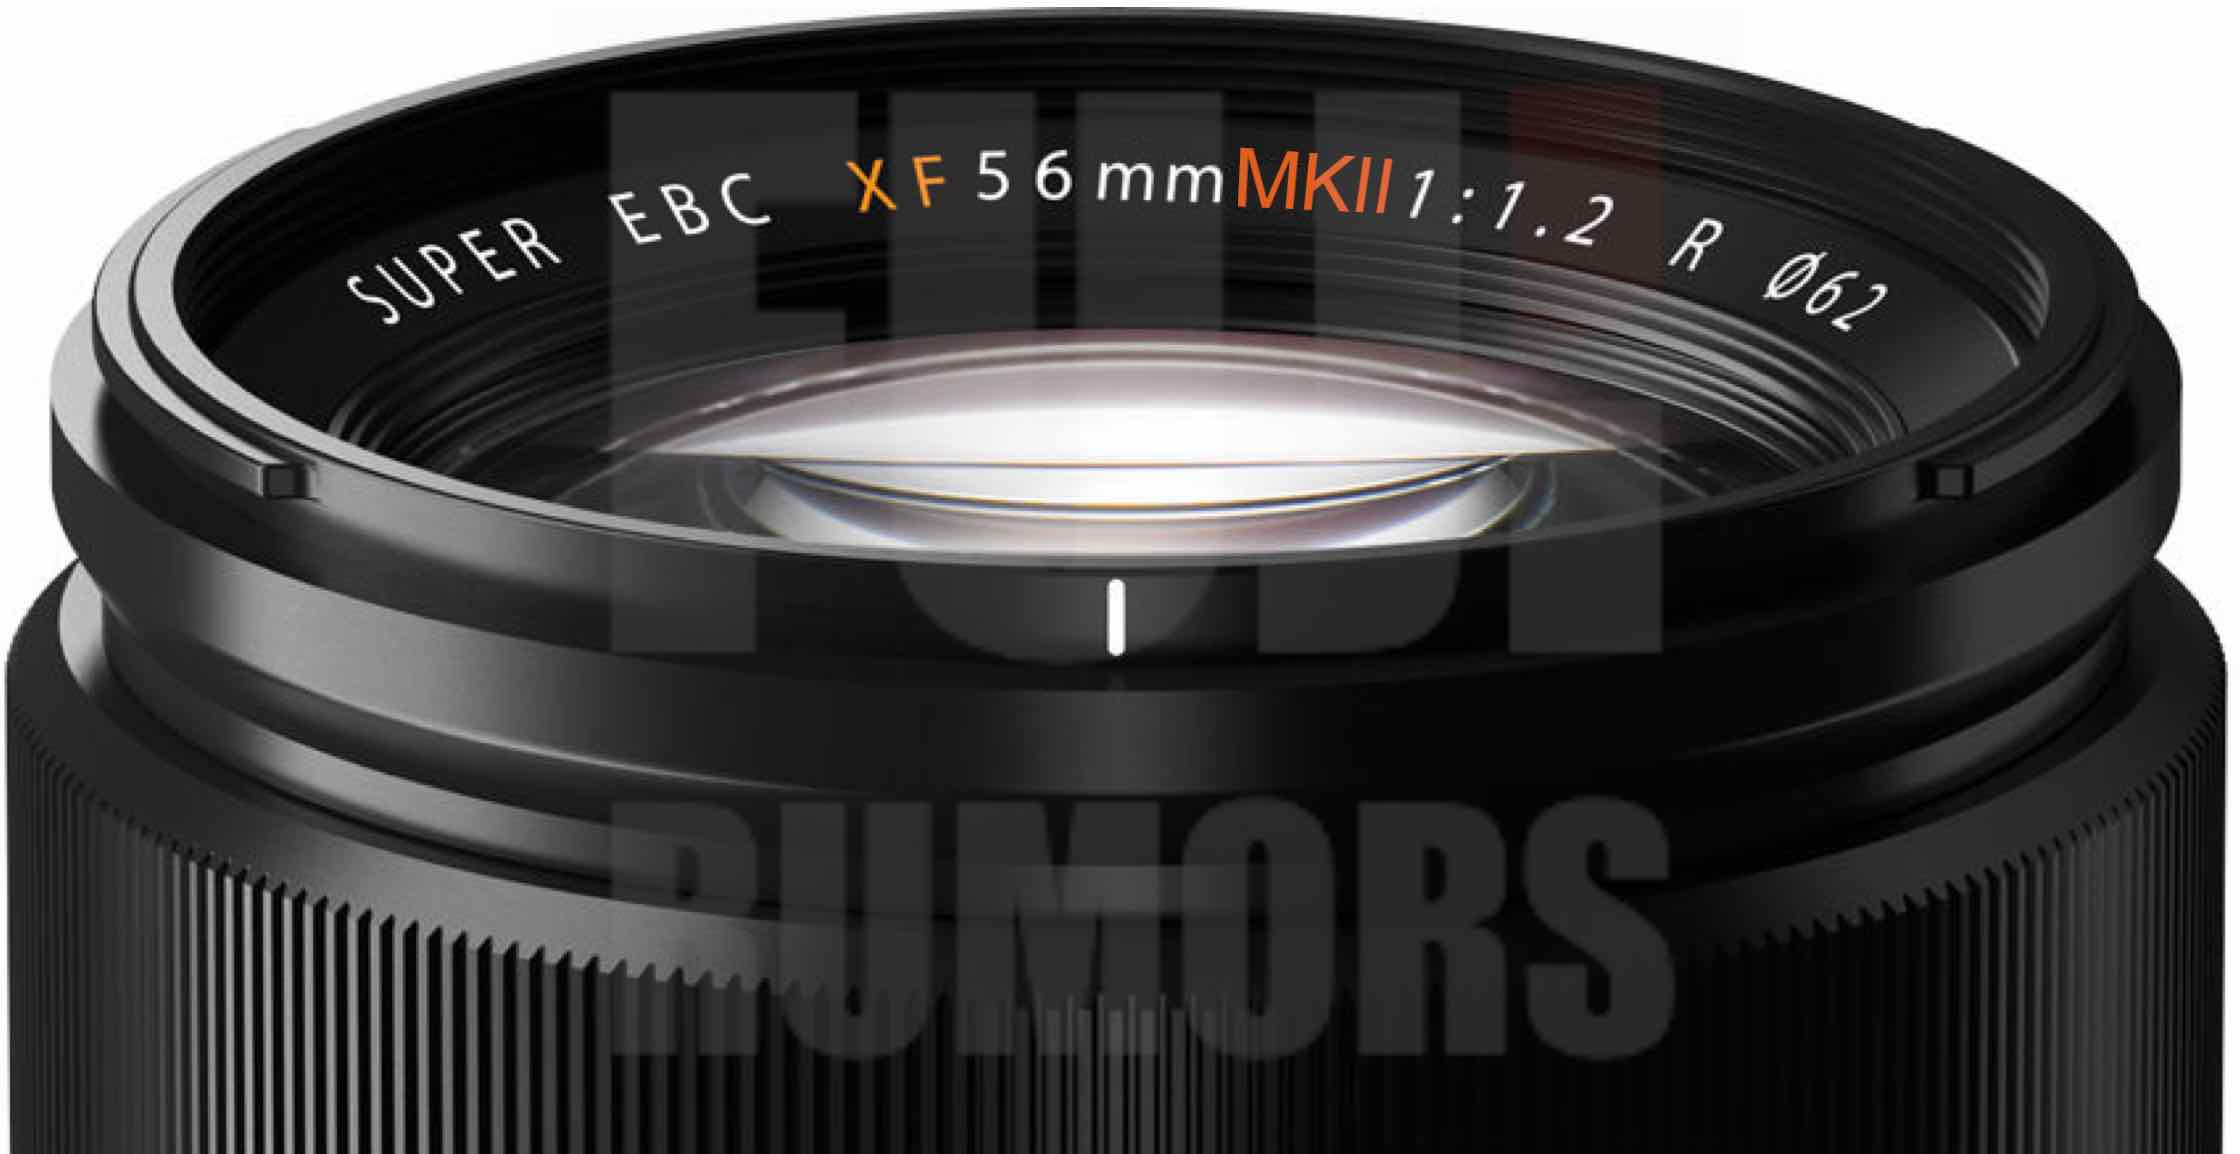 BREAKING: Fujifilm Working on Fujinon XF56mm f/1.2 MKII - Fuji Rumors